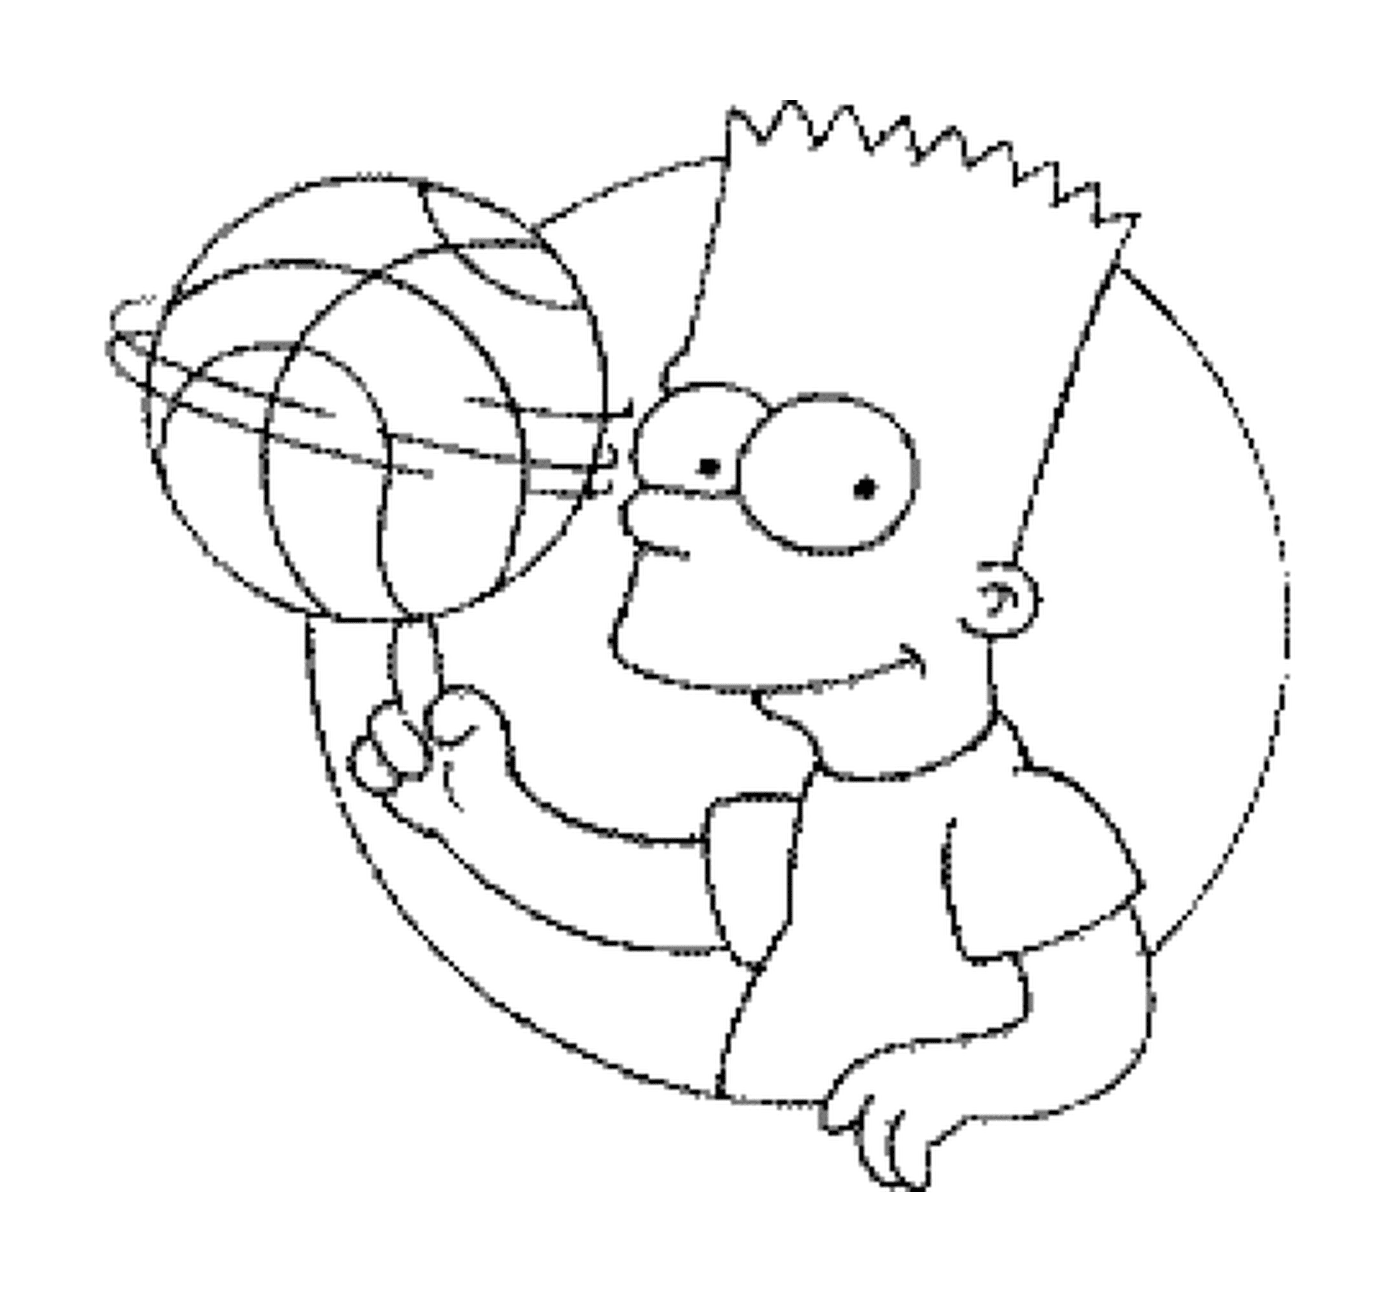  Bart spielt Basketball 